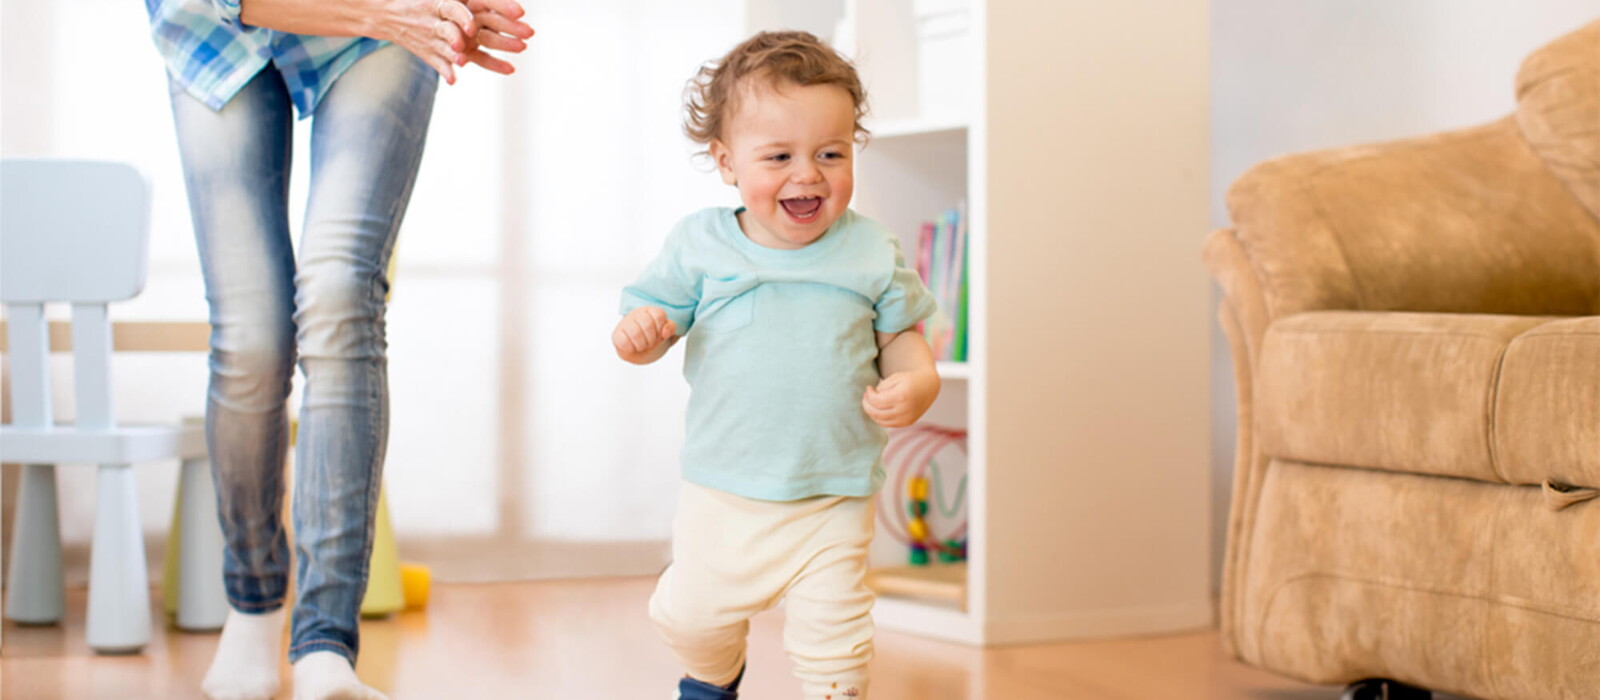 Managing a running toddler